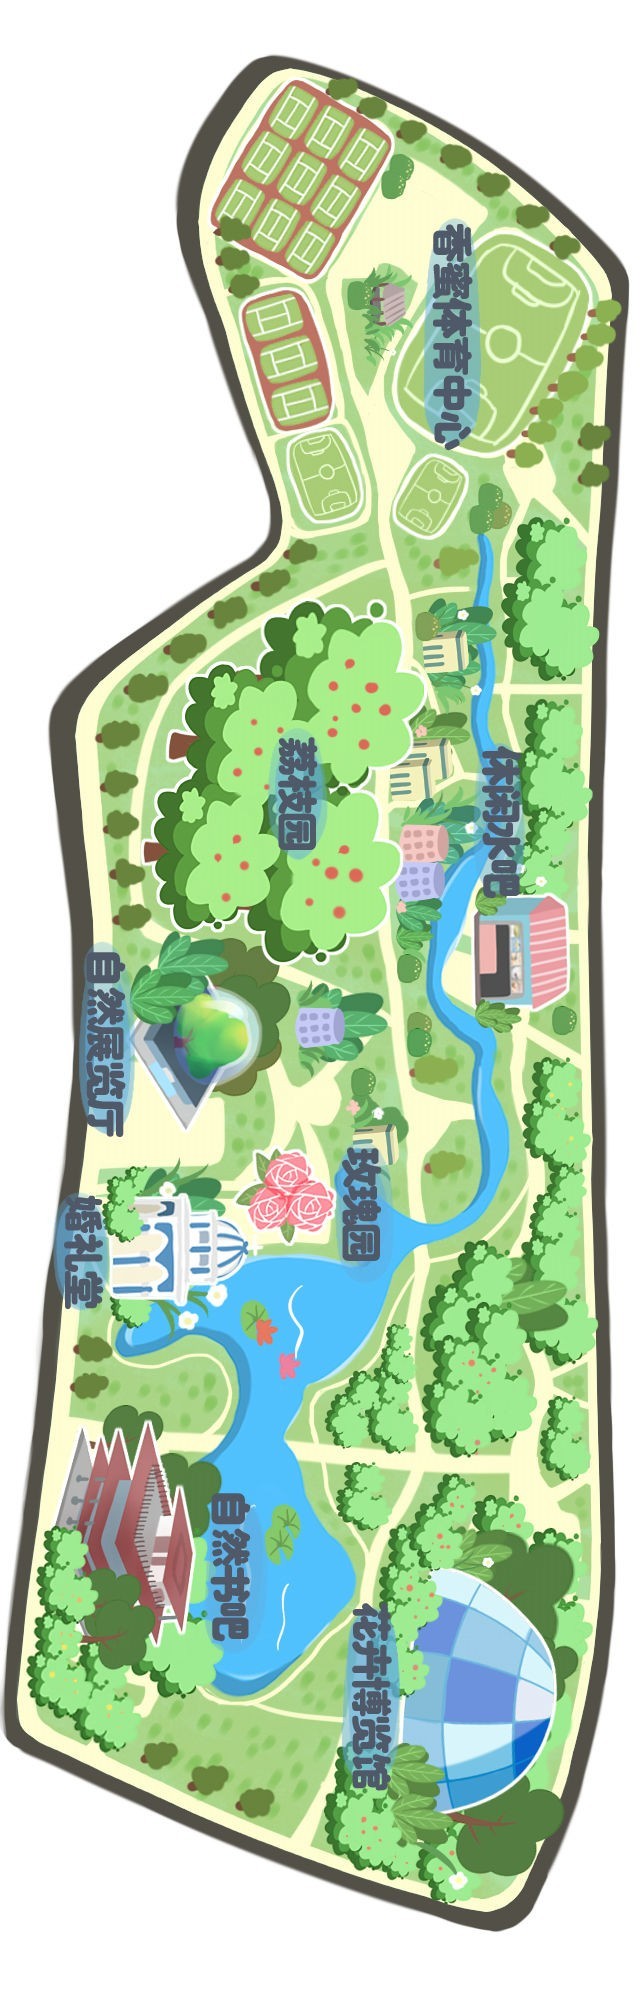 深圳香蜜湖公园地图图片